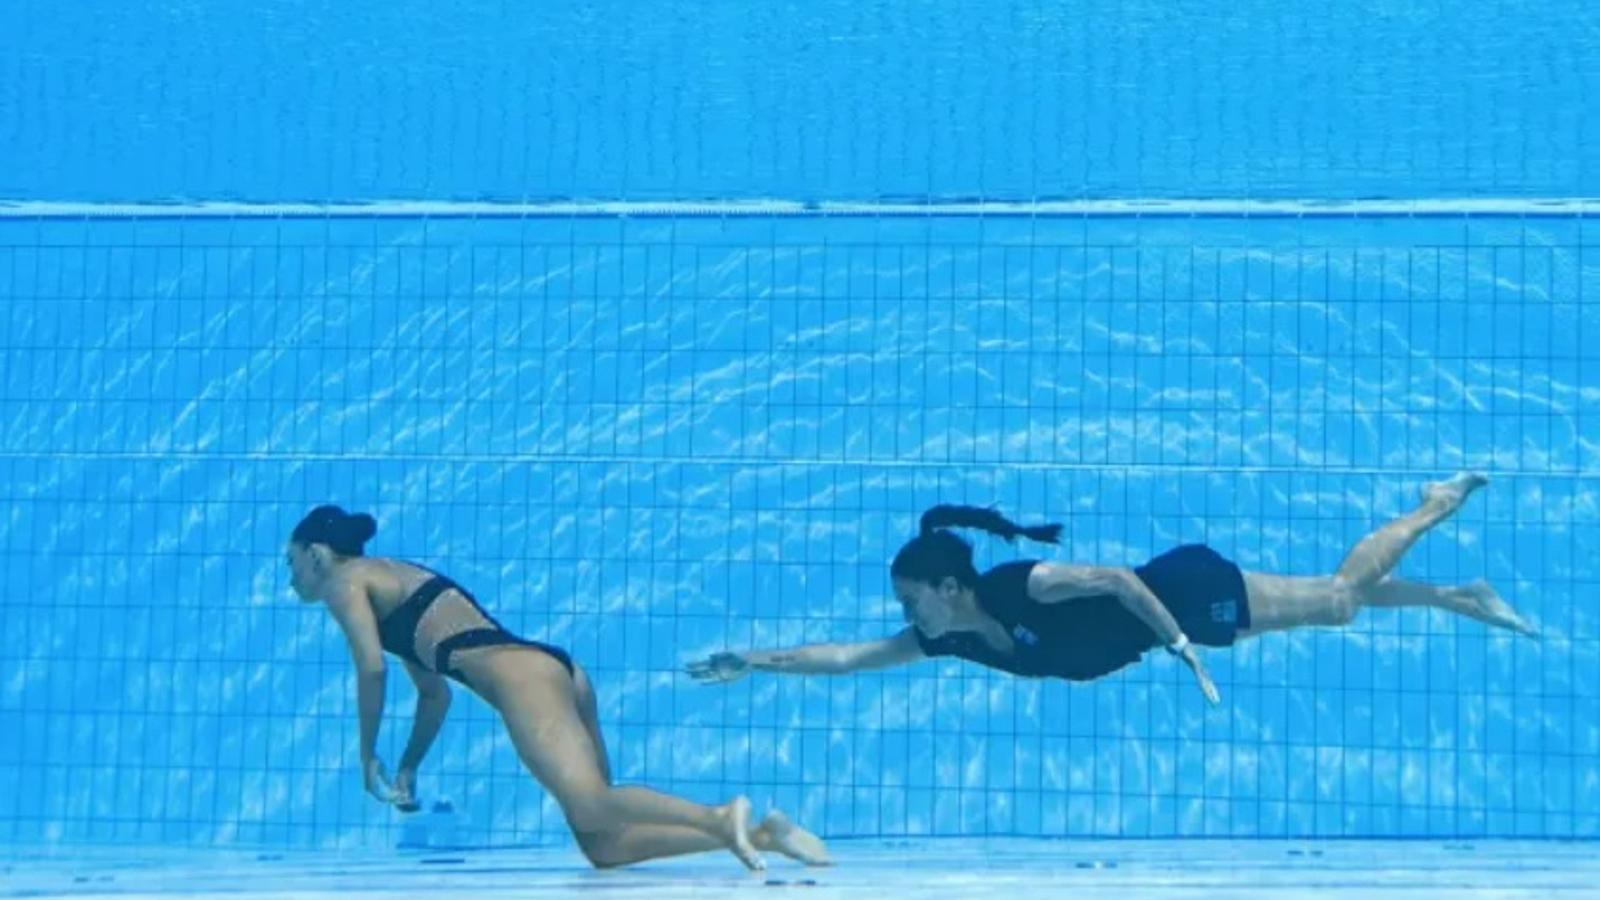 Une nageuse artistique est sauvée de la noyade après s'être évanouie dans la piscine